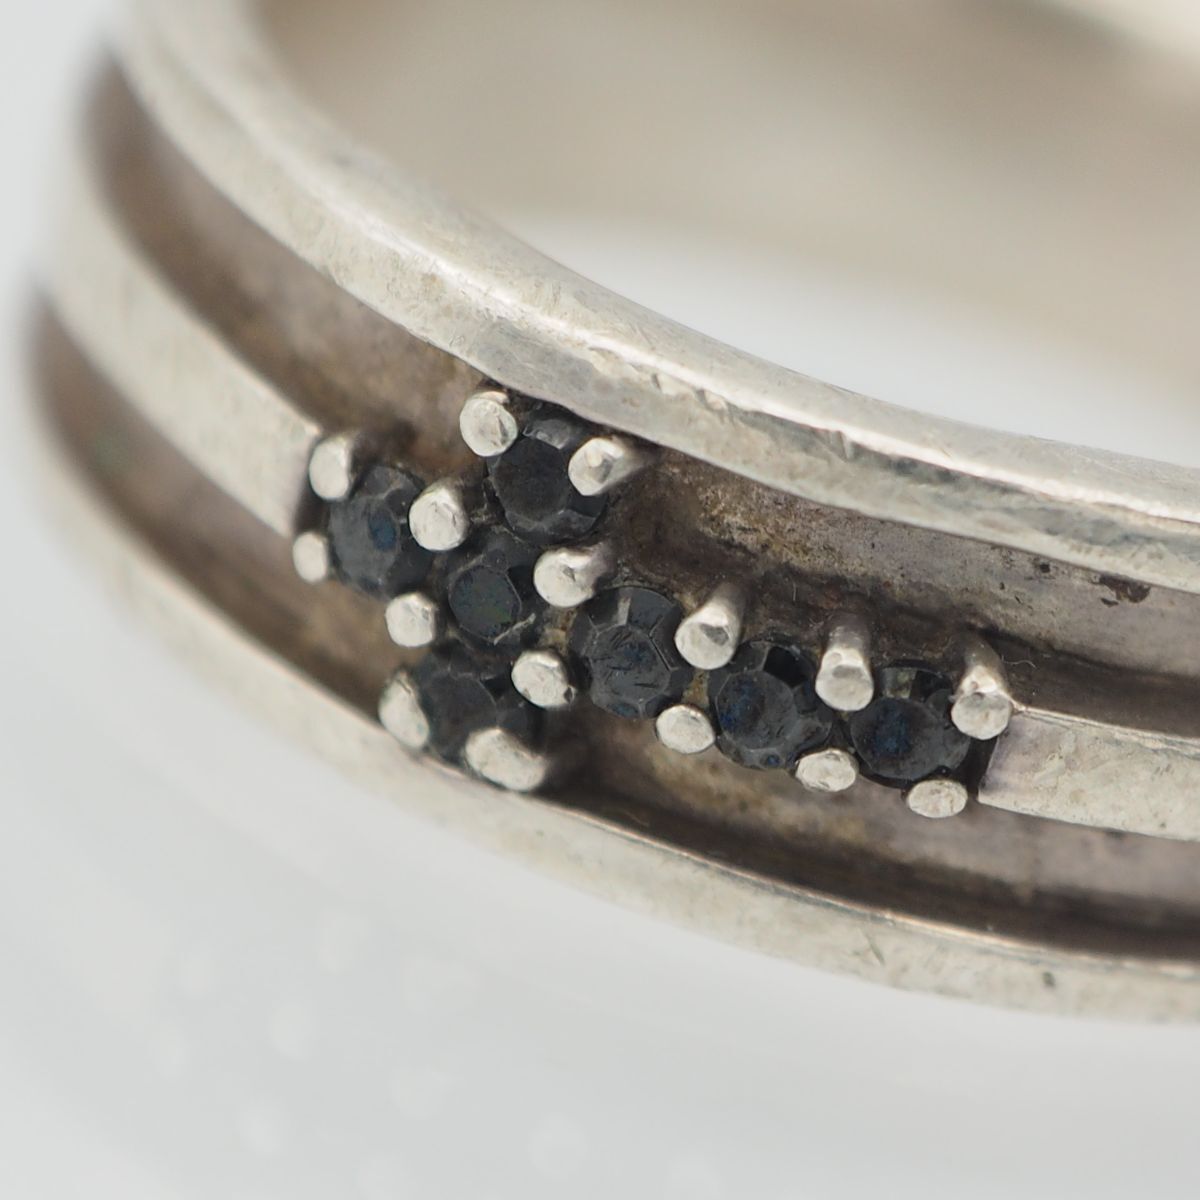 N983 Vintage SILVER925 печать кольцо Cross дизайн серебряный кольцо 15 номер 